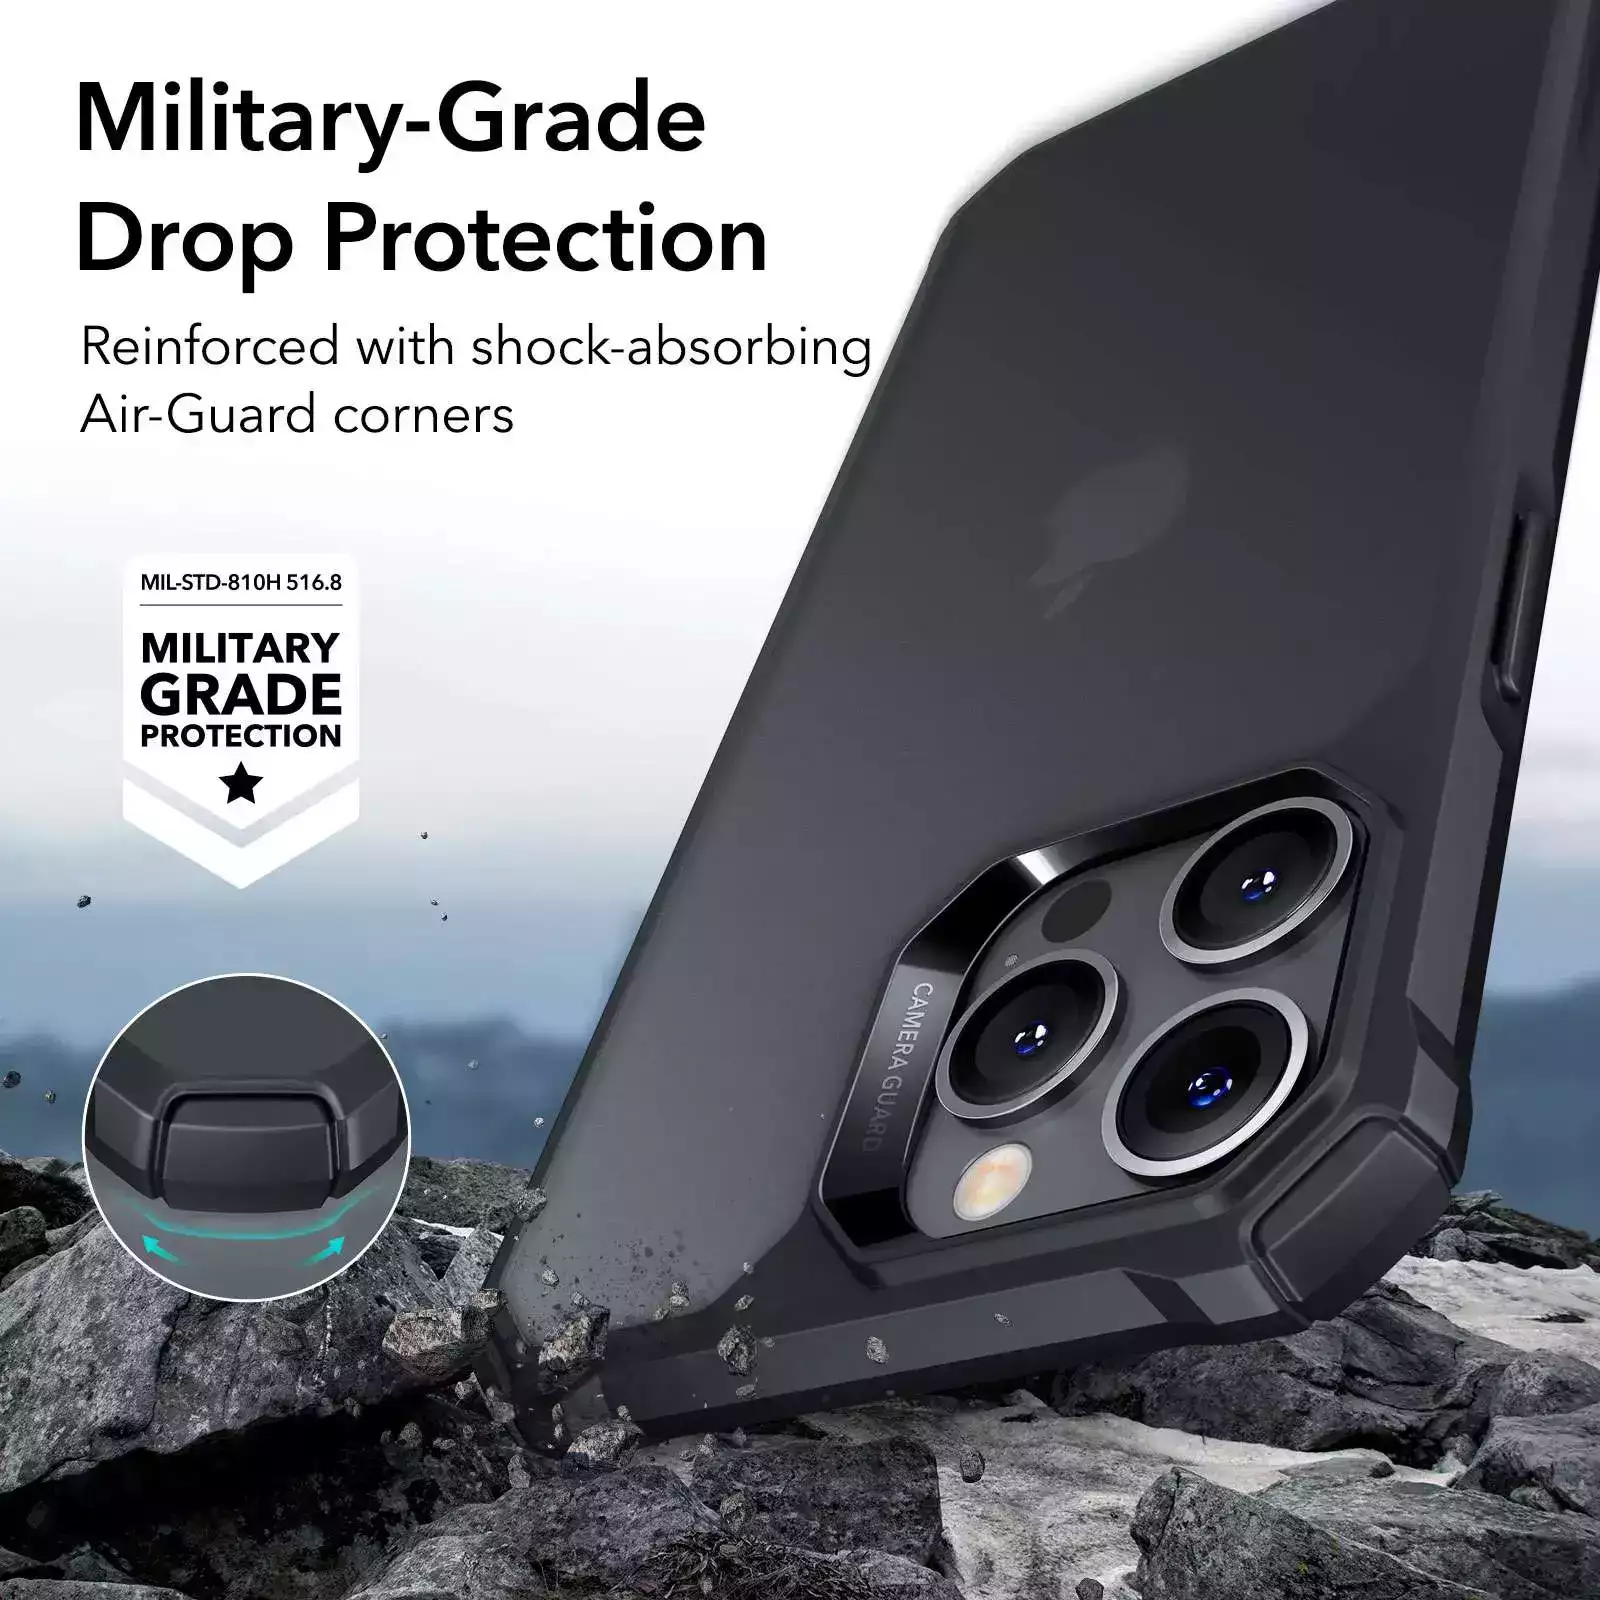 ESR iPhone 14 Pro Max Kılıf Air Armor Siyah 4894240161302